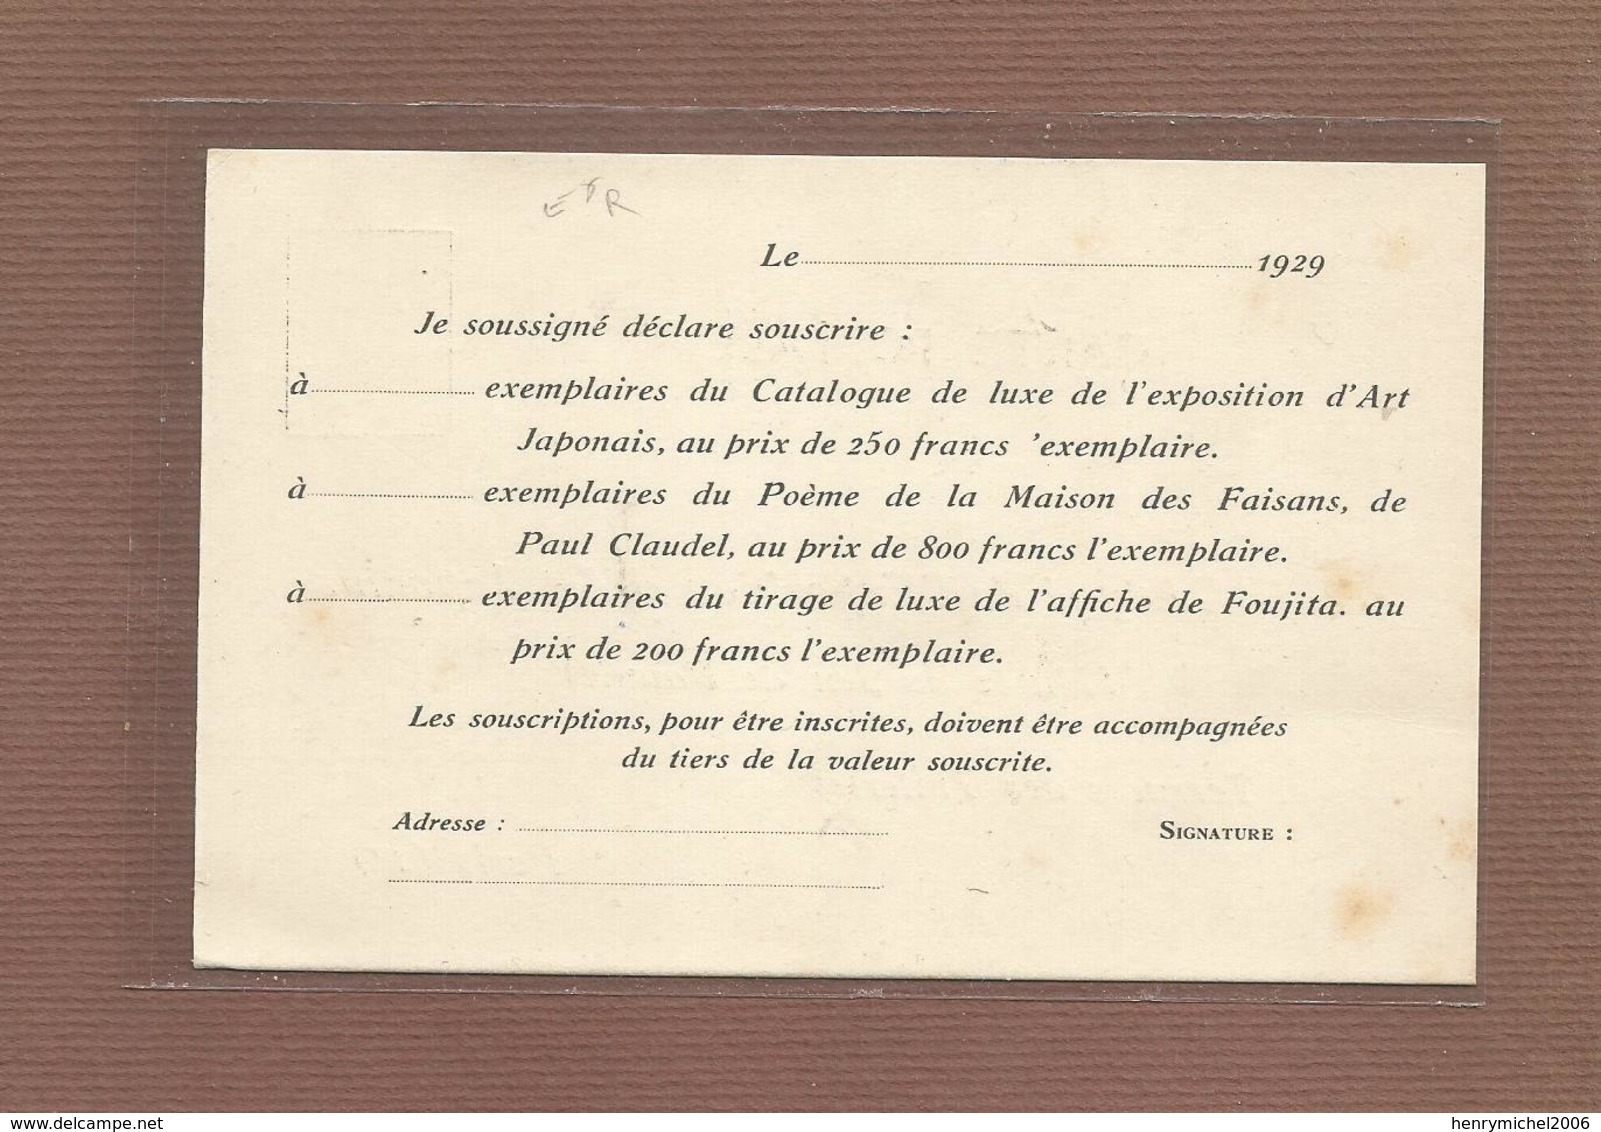 Pub Publicité Paris 1er Délégué De L'exposition D'art Japonais Musée Du Jeu De Paume Catalogue Luxe Souscriptions 1929 - Arrondissement: 01